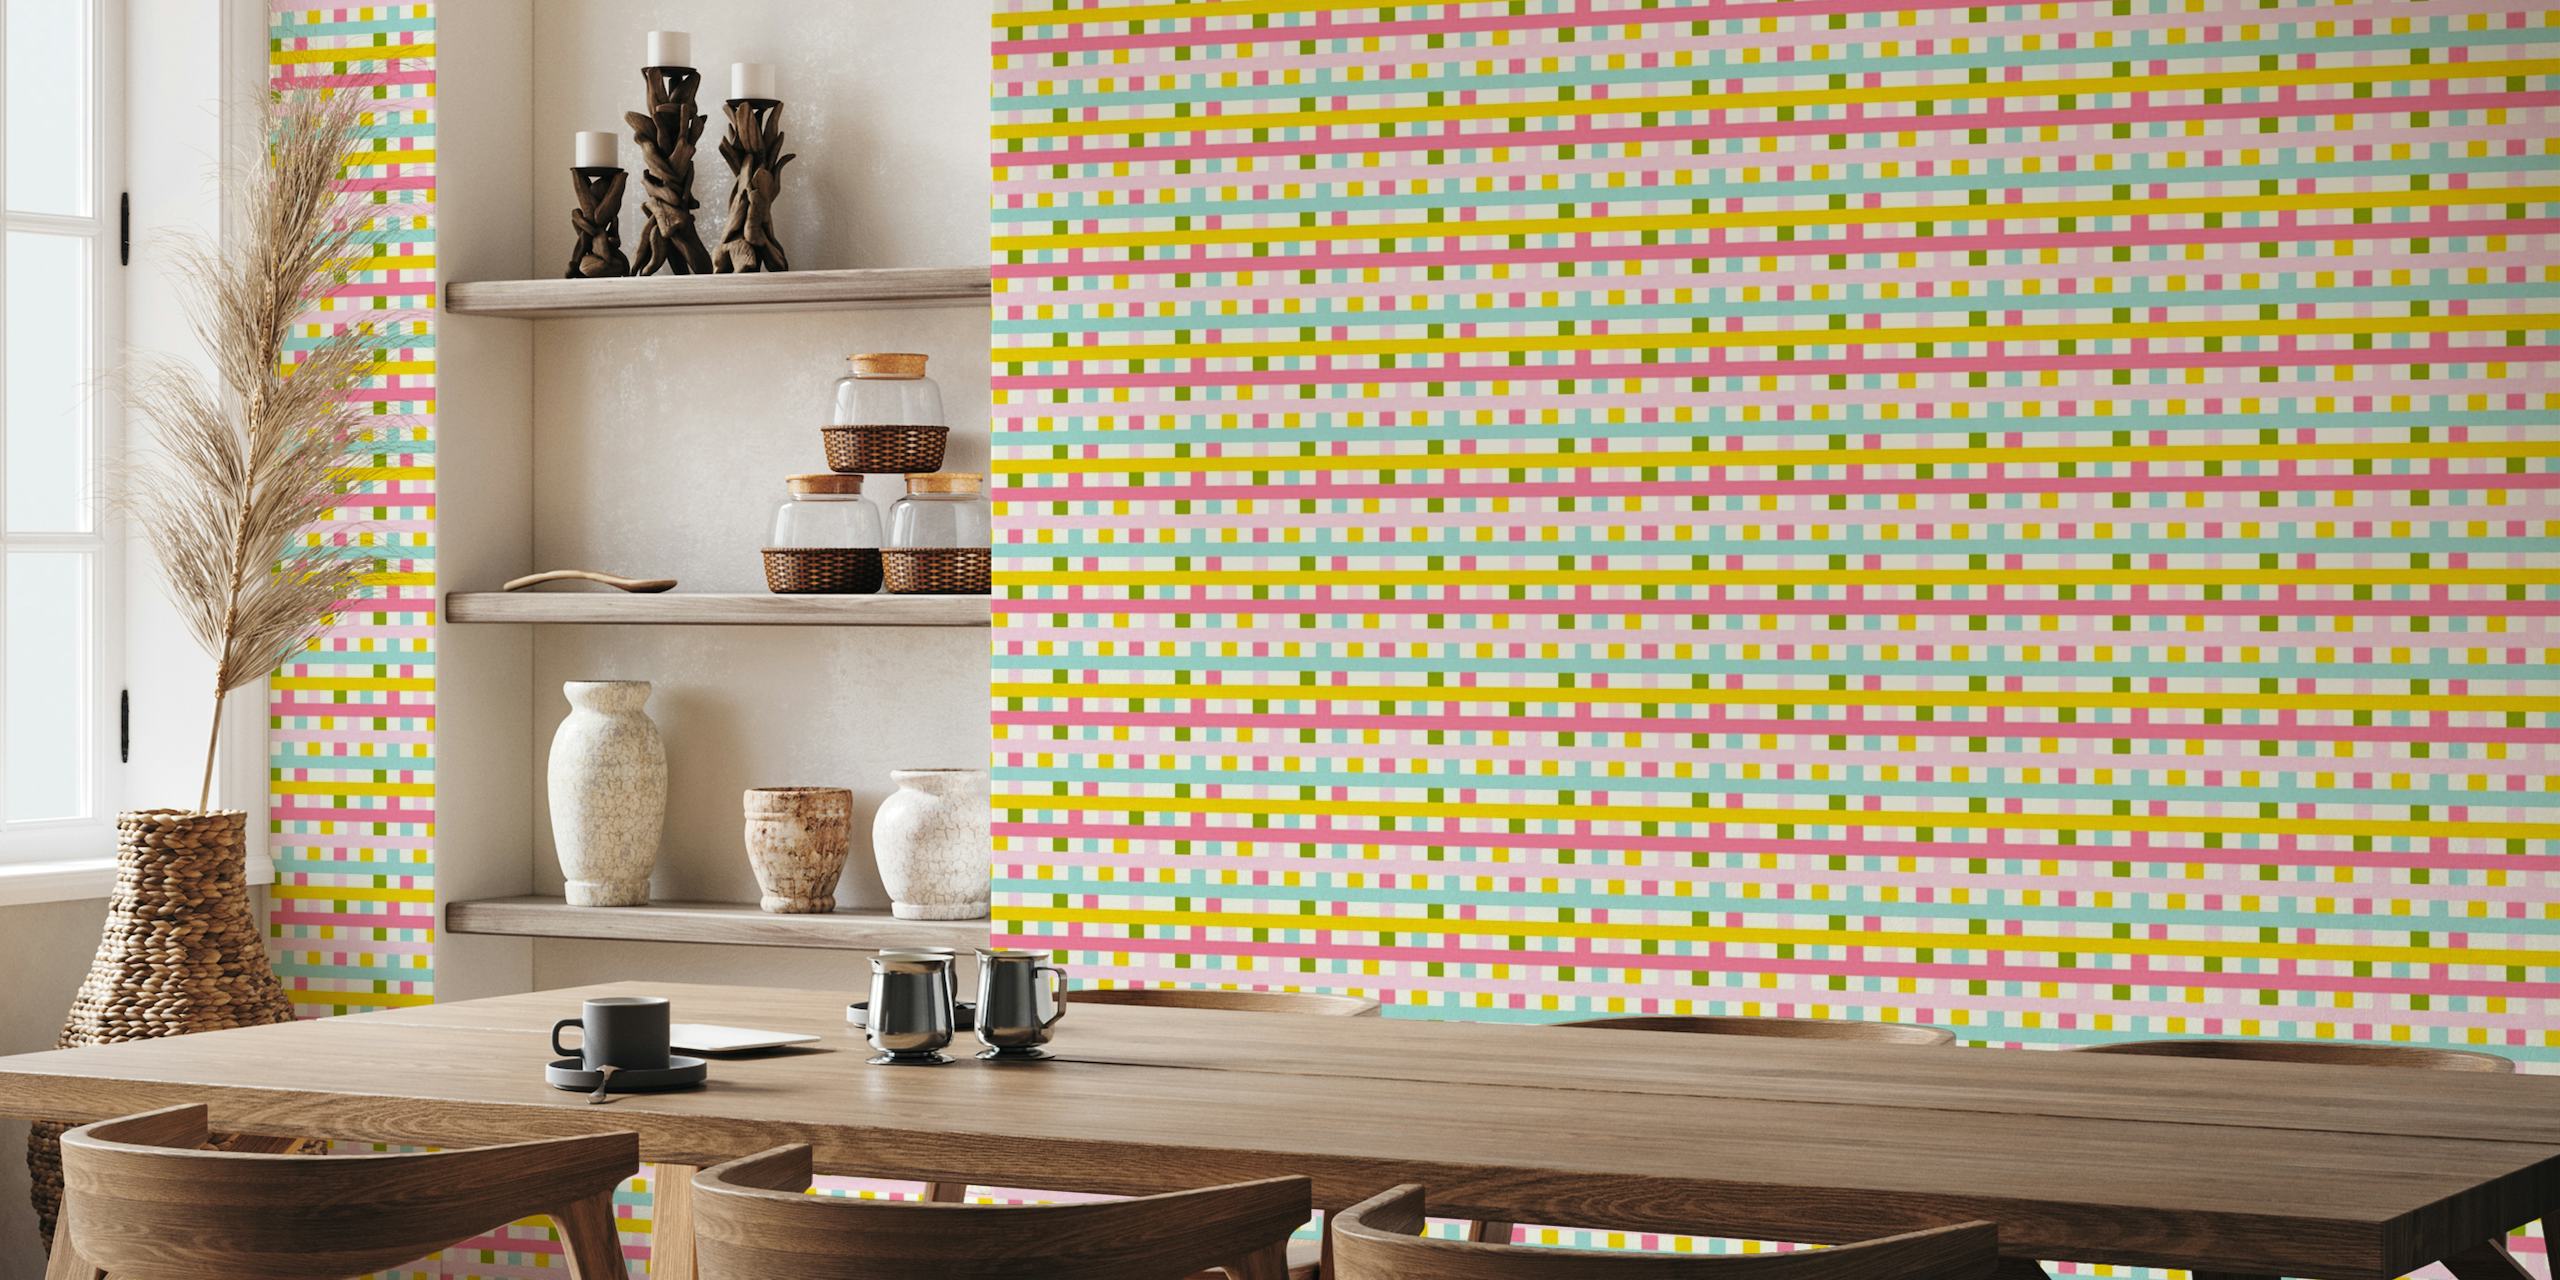 Kleurrijke fotobehang met geruit patroon met pastelroze, blauwe, gele en groene vierkanten